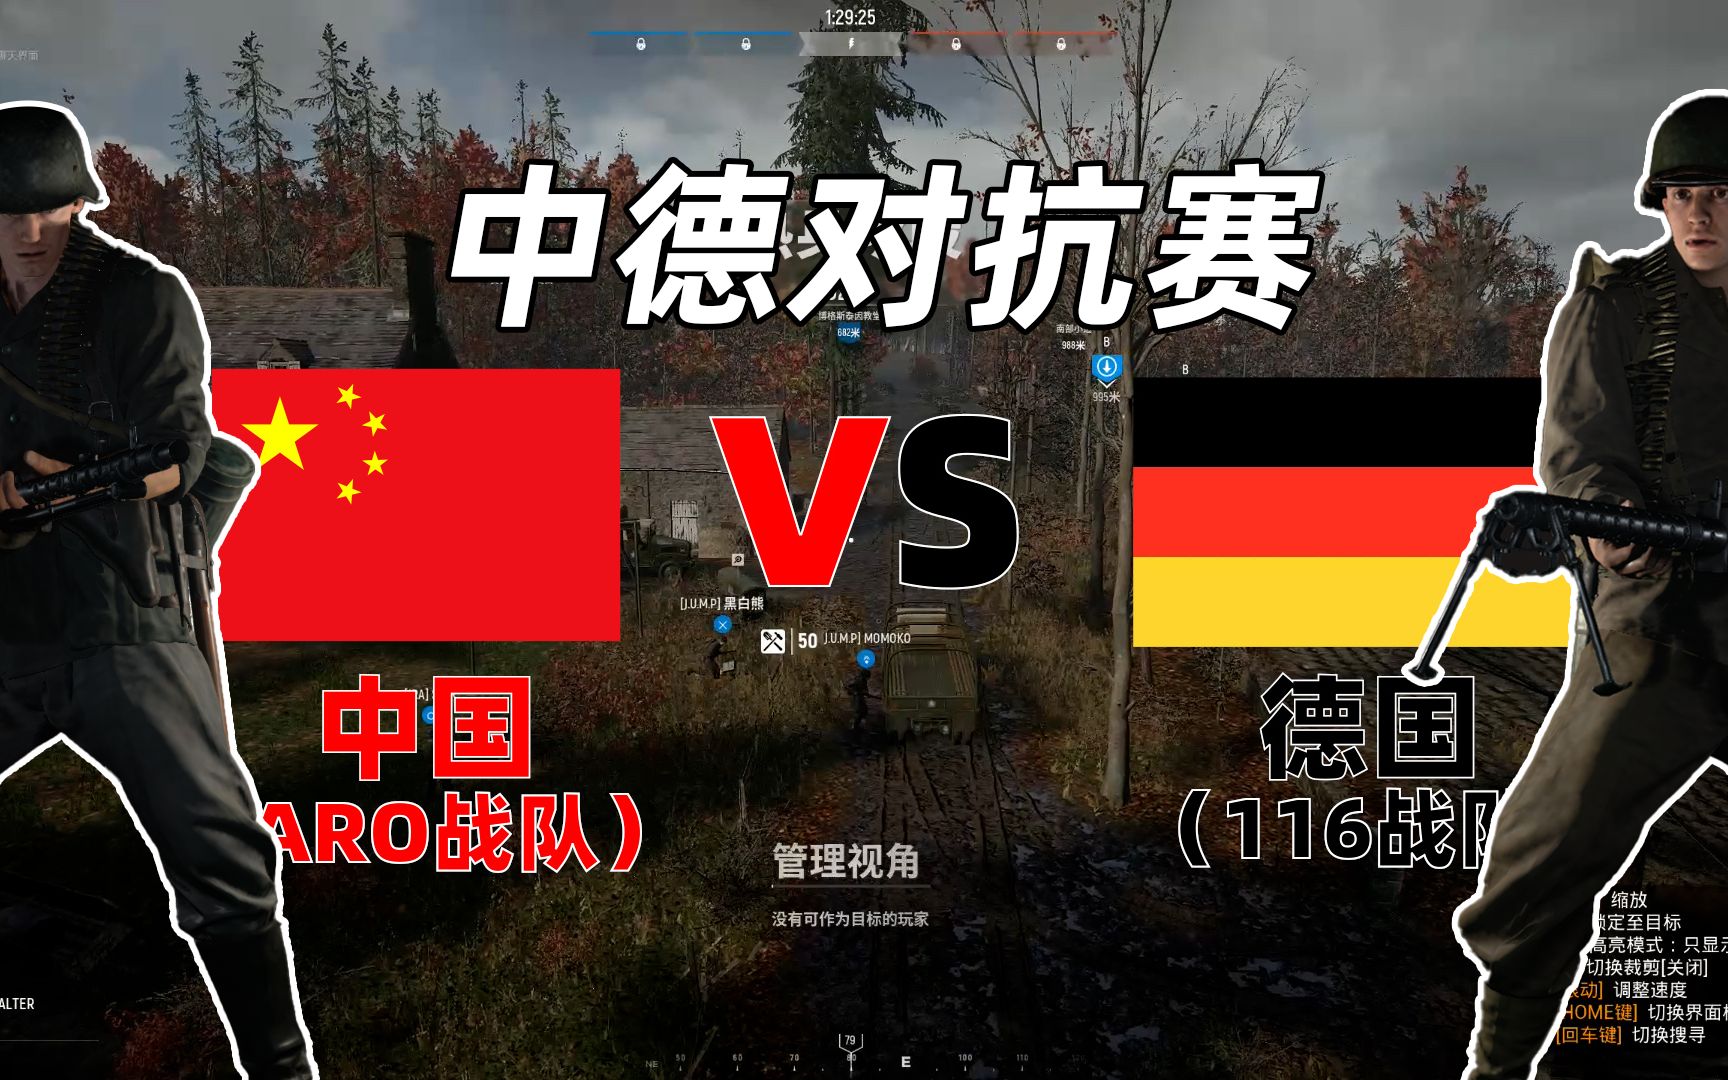 【人间地狱】中德对抗赛解说！中国玩家完美化解德国空降战术！（上）